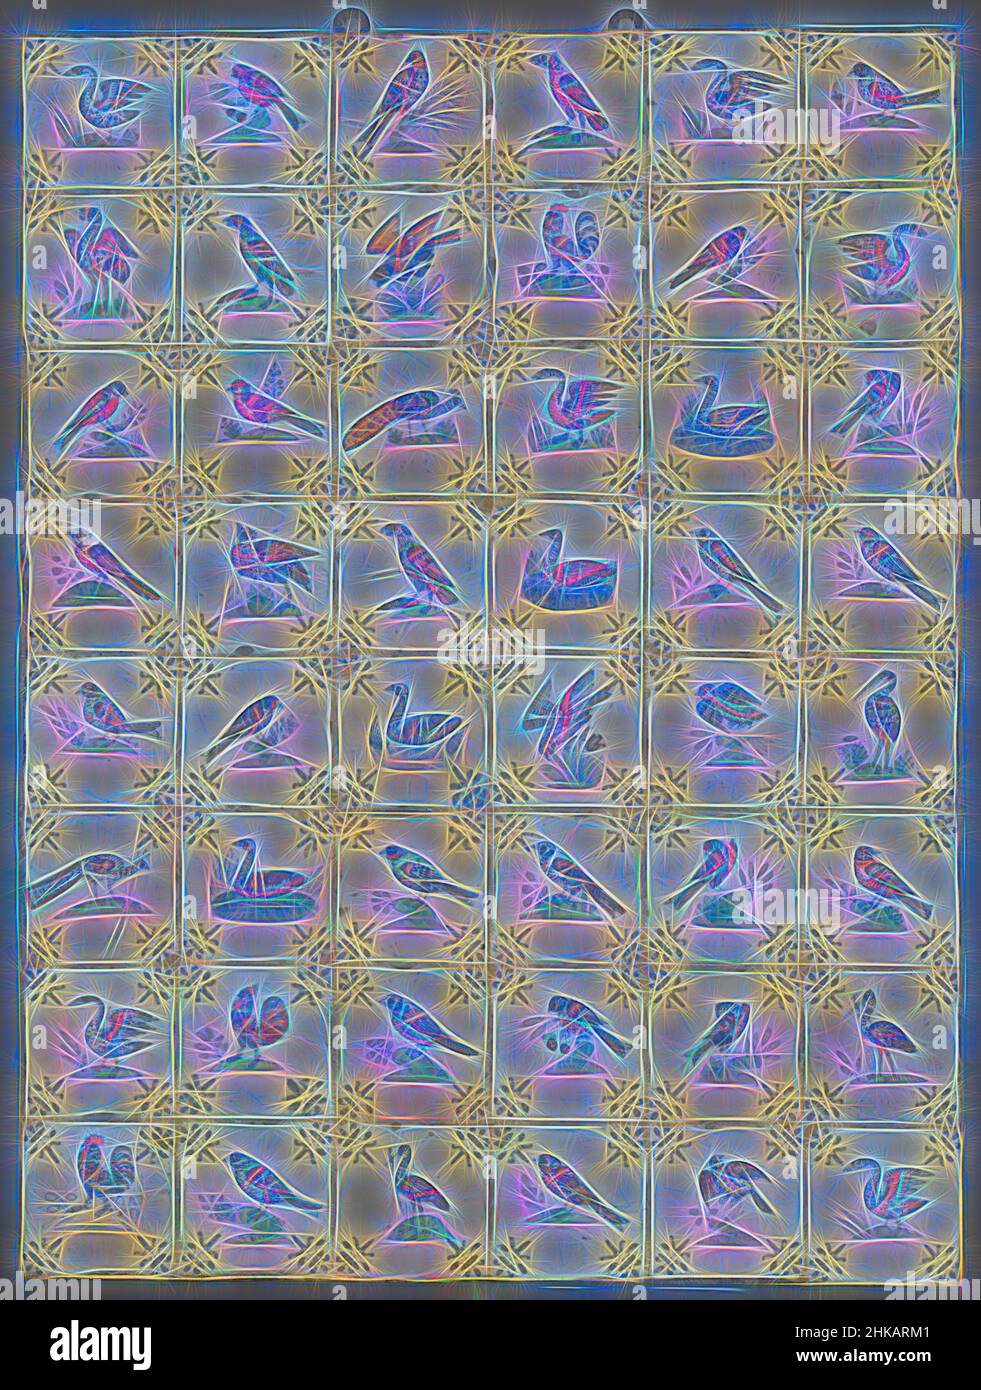 Inspirado por el Campo de cuarenta y ocho azulejos con pájaros, Campo de cuarenta y ocho azulejos (8 x 6) cada uno con un pájaro multicolor (azul, verde, amarillo y naranja) pintado en un suelo con un lirio en las esquinas., Países Bajos, c. 1640 - c. 1660, loza, esmalte de estaño, majolica, altura 104 cm x ancho 78 cm x profundidad 4, Reimaginado por Artótop. Arte clásico reinventado con un toque moderno. Diseño de brillo cálido y alegre y luminosidad e radiación de rayos de luz. Fotografía inspirada en el surrealismo y el futurismo, que abarca la energía dinámica de la tecnología moderna, el movimiento, la velocidad y la revolución de la cultura Foto de stock